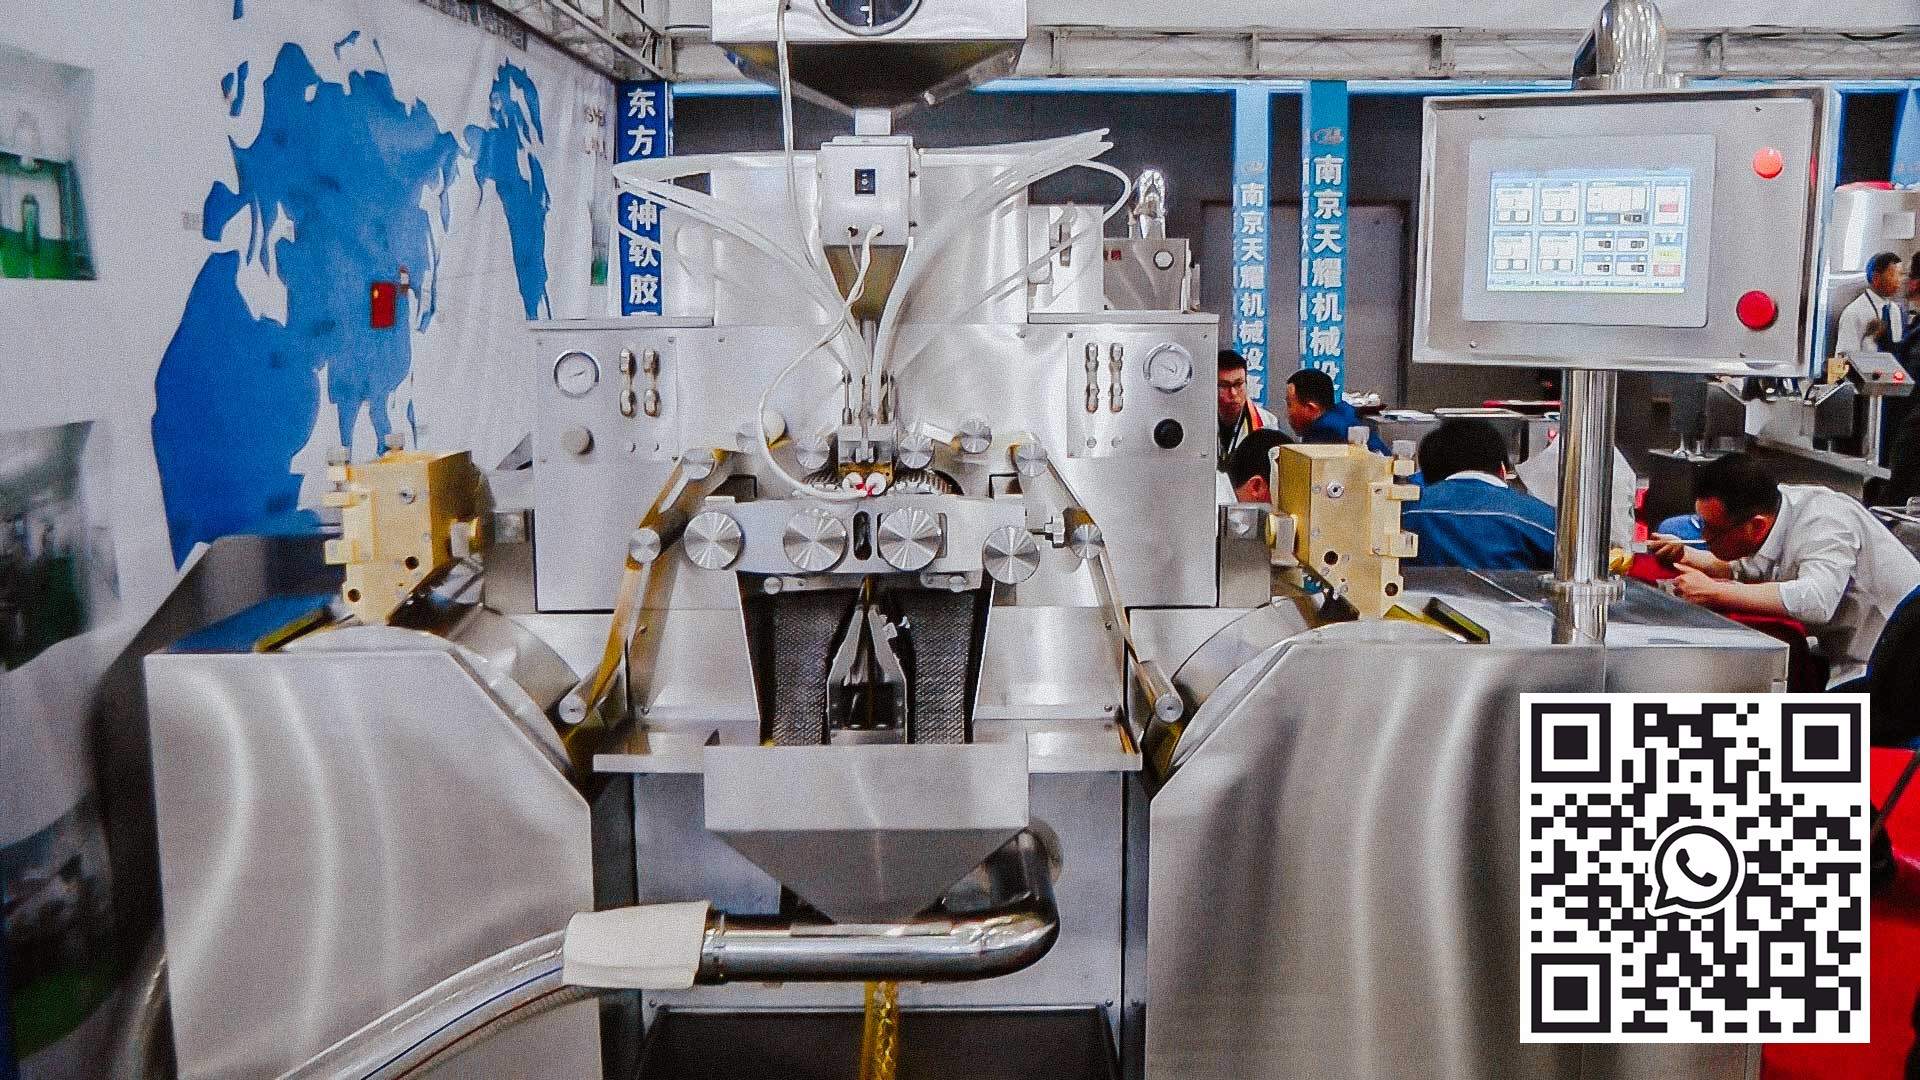 آلة تغليف أوتوماتيكية لإنتاج كبسولات هلامية ناعمة لأوميغا